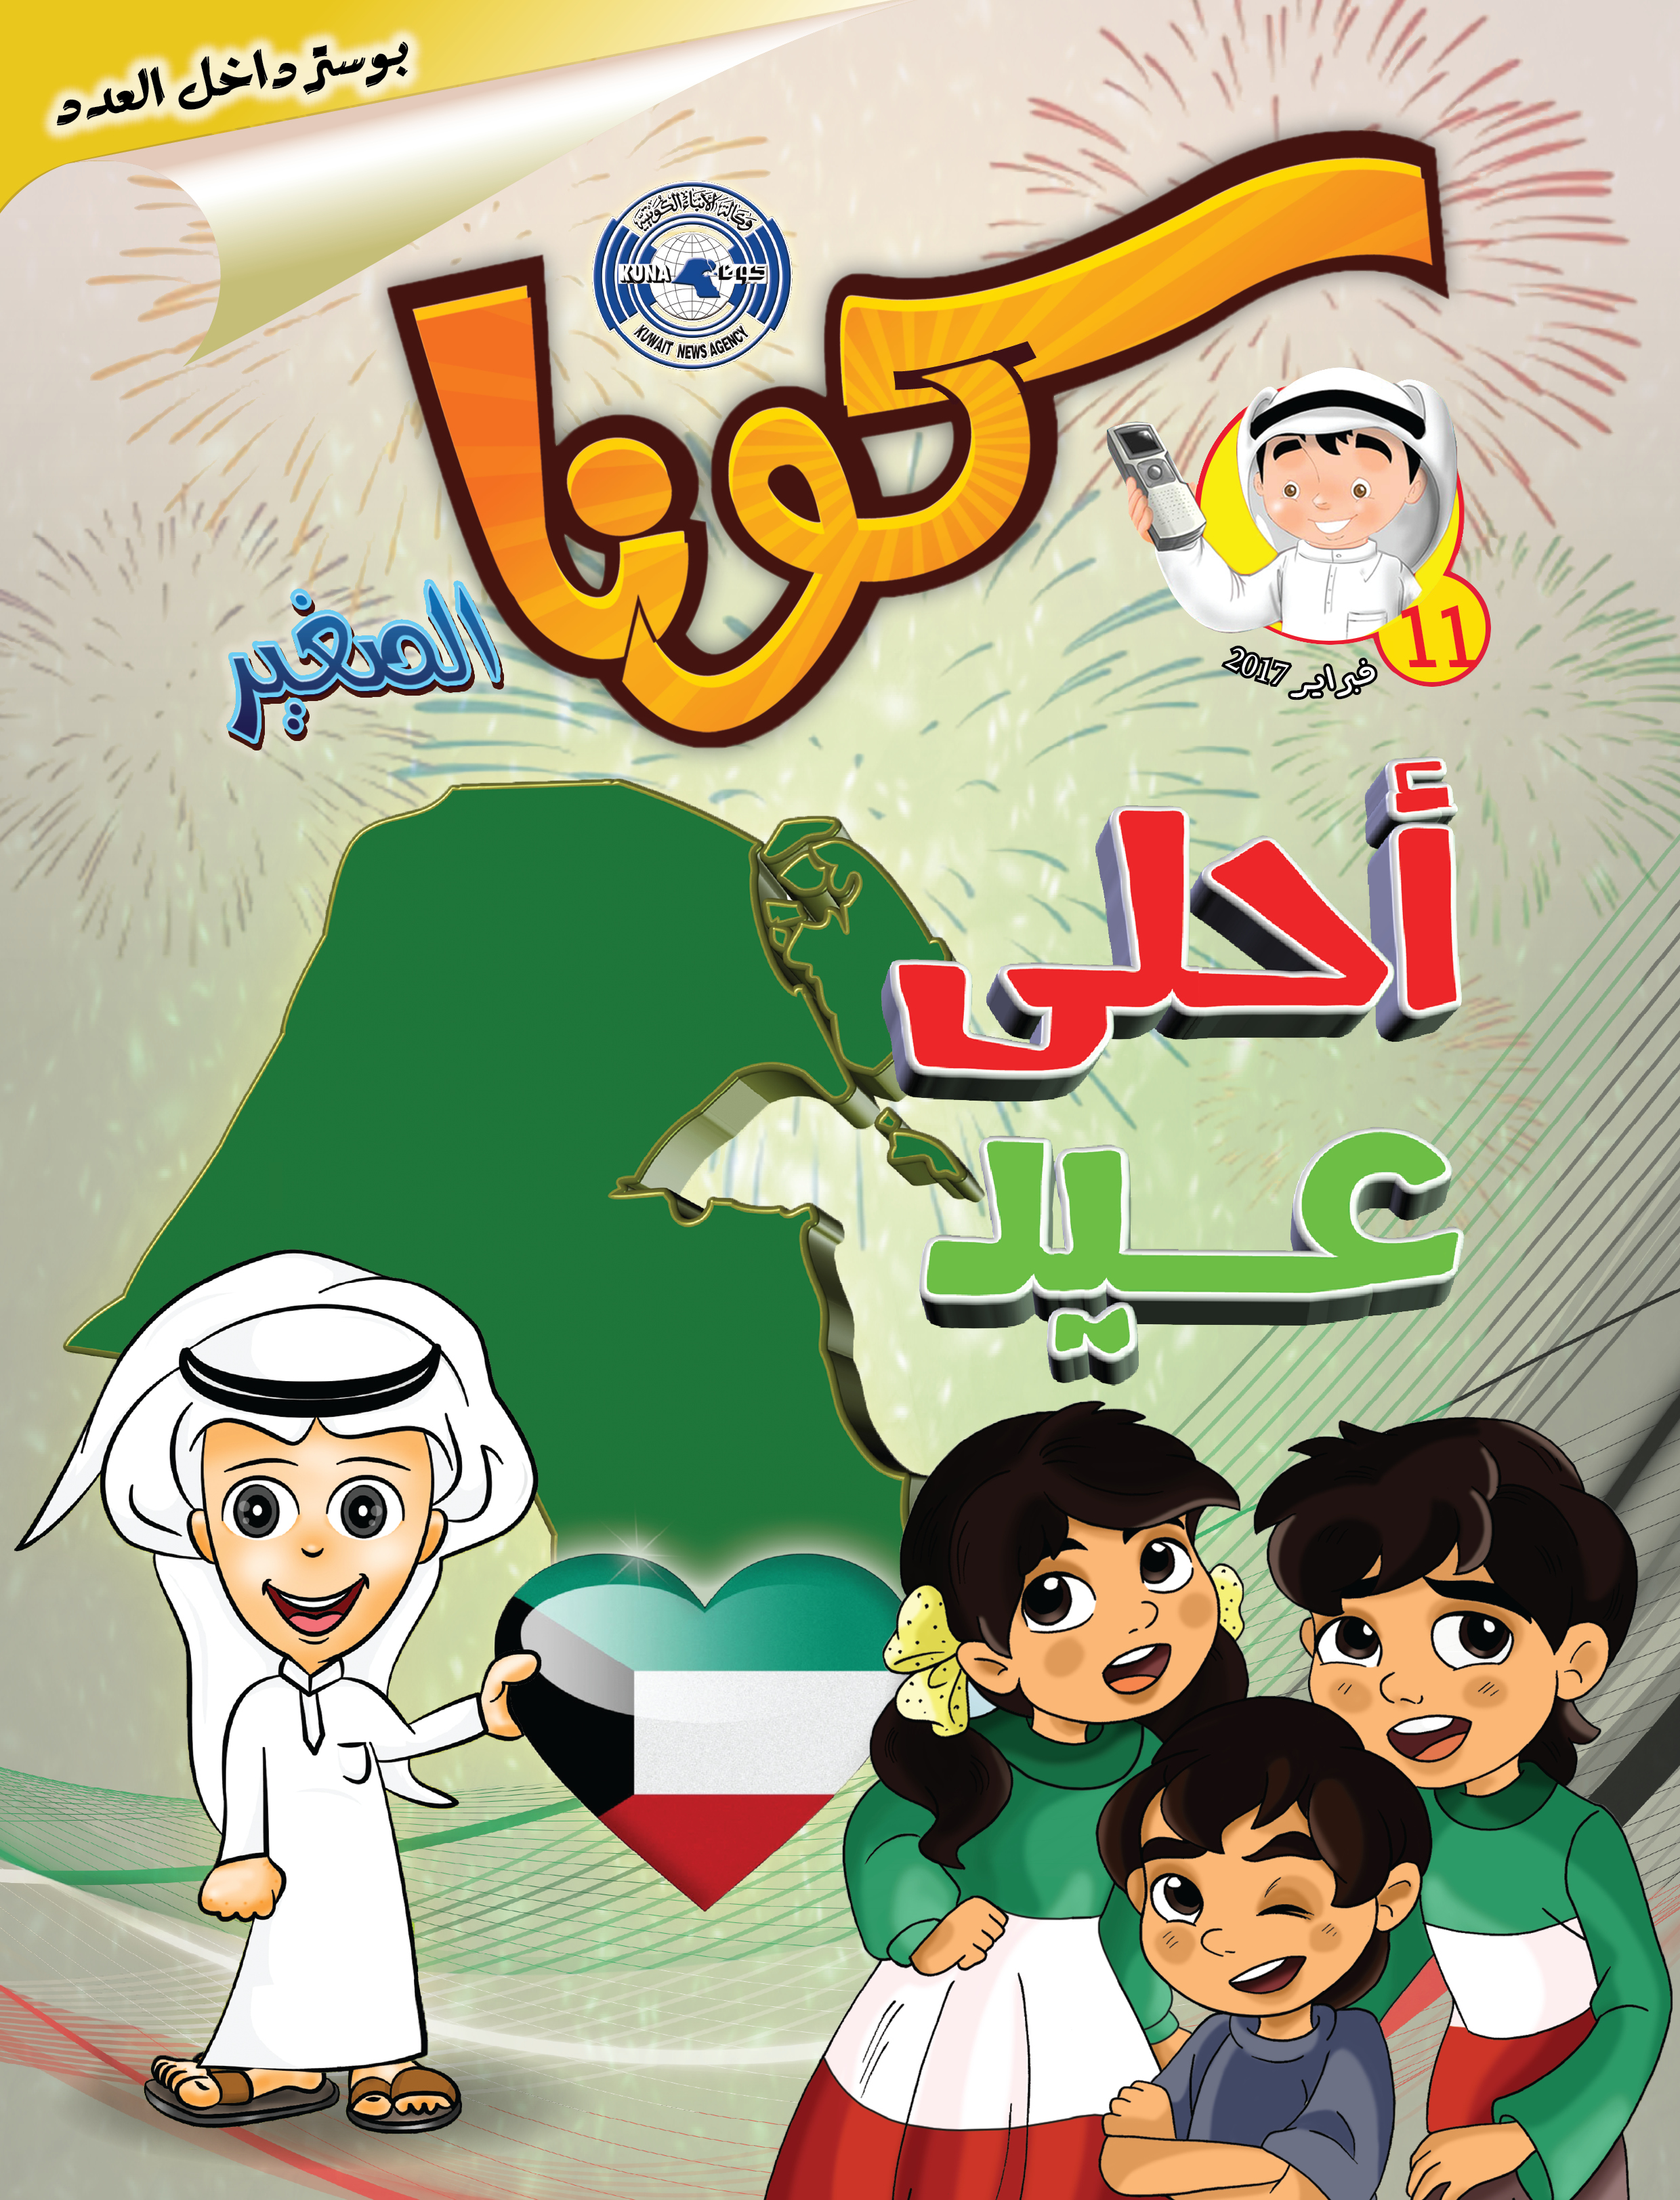 وكالة الأنباء الكويتية (كونا) تصدر العدد الحادي عشر من مجلتها الفصلية الخاصة بالطفل (كونا الصغير) تزامنا مع المناسبات الوطنية